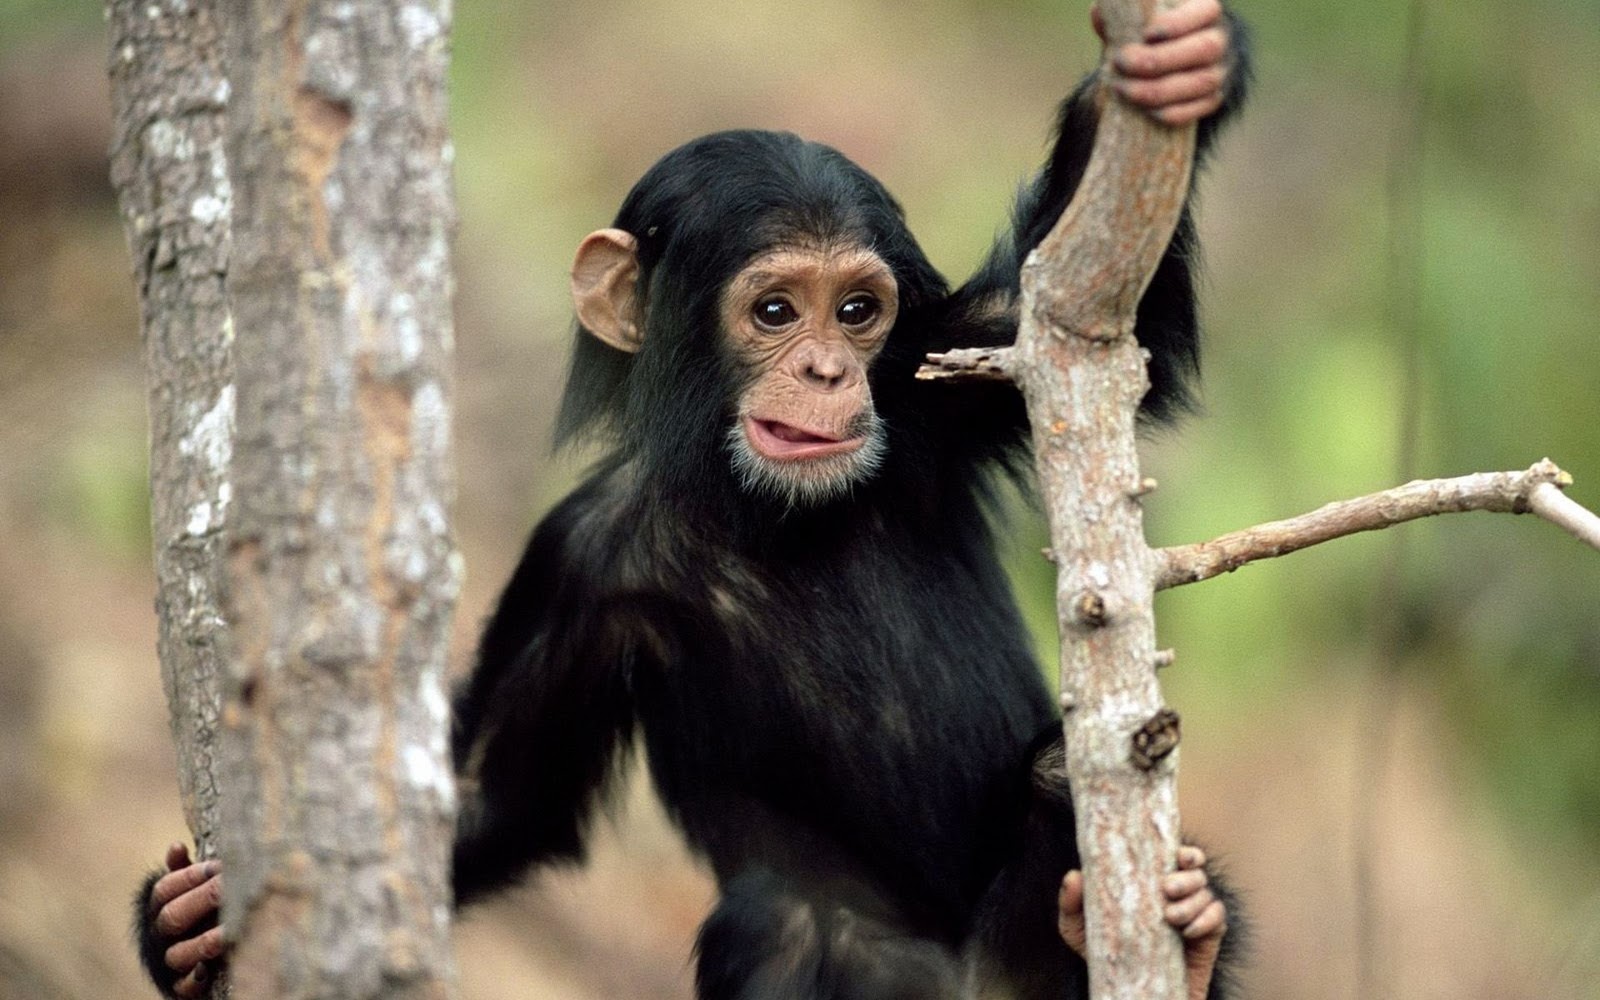 fond d'écran mignon de singe,chimpanzé commun,primate,museau,humain,animal terrestre